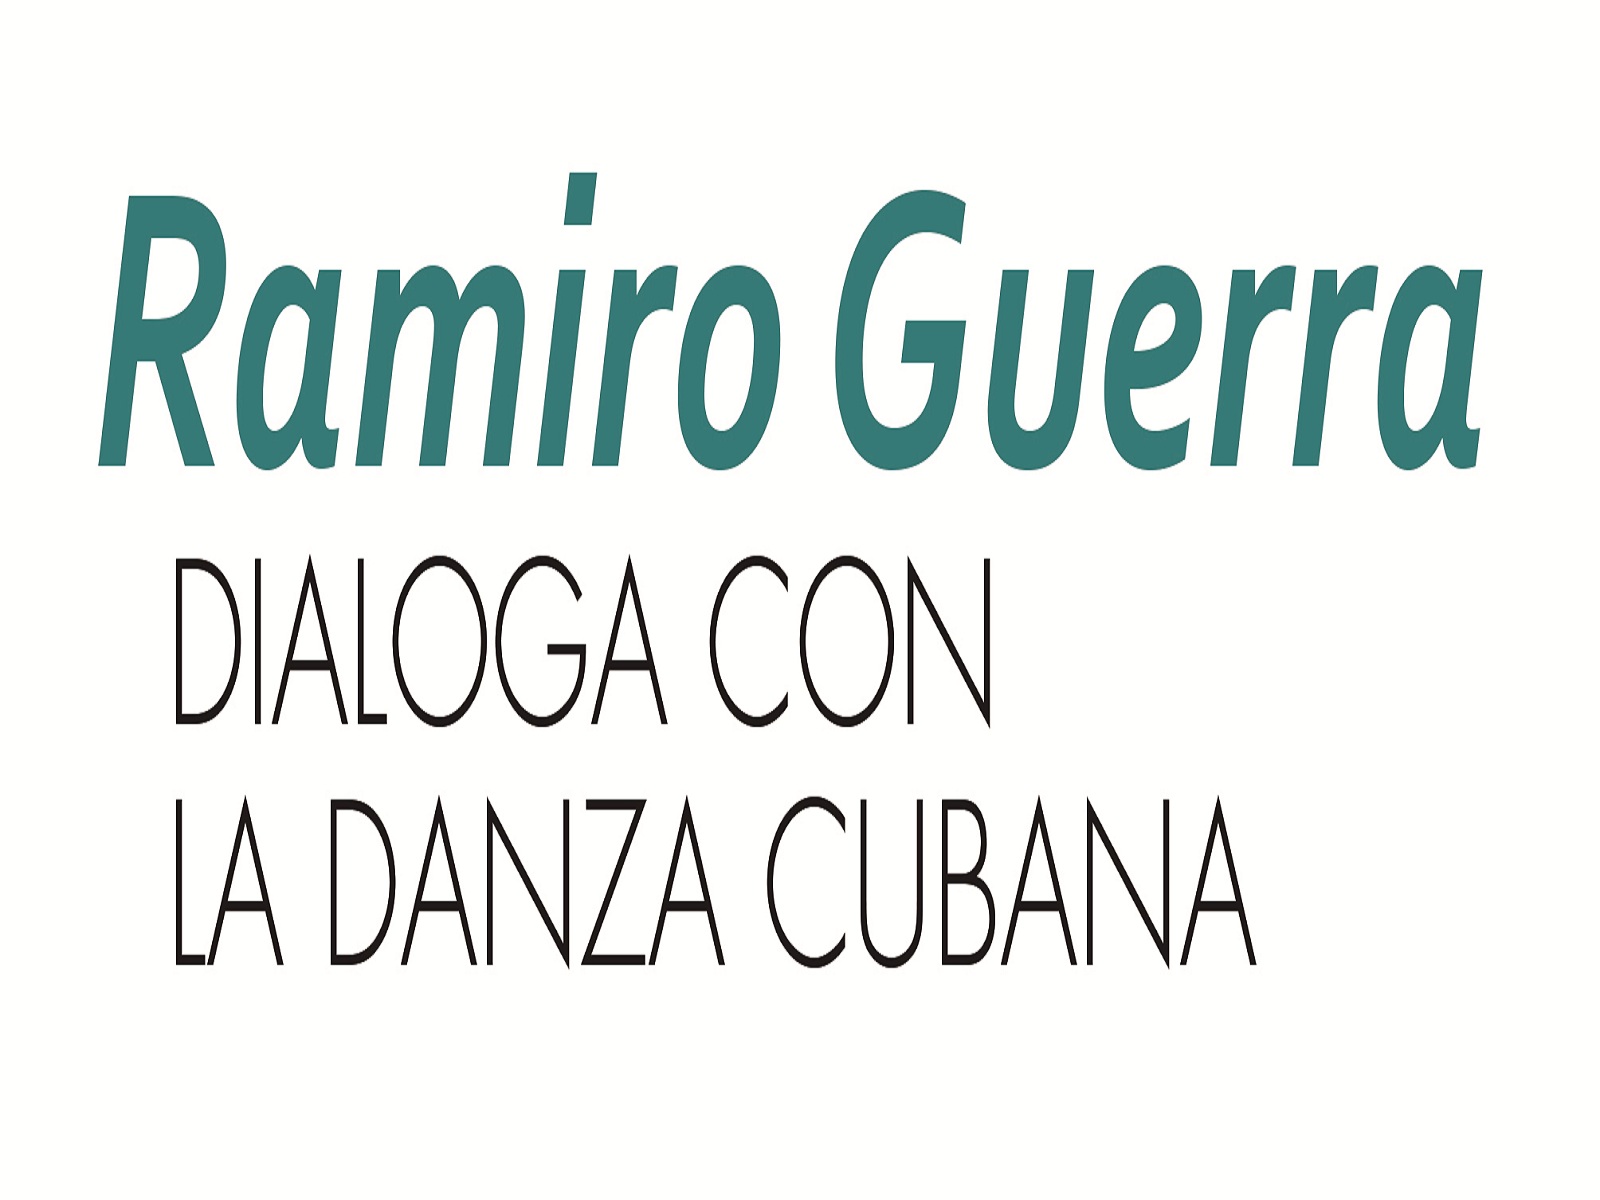 Ramiro Guerra dialoga con la danza cubana